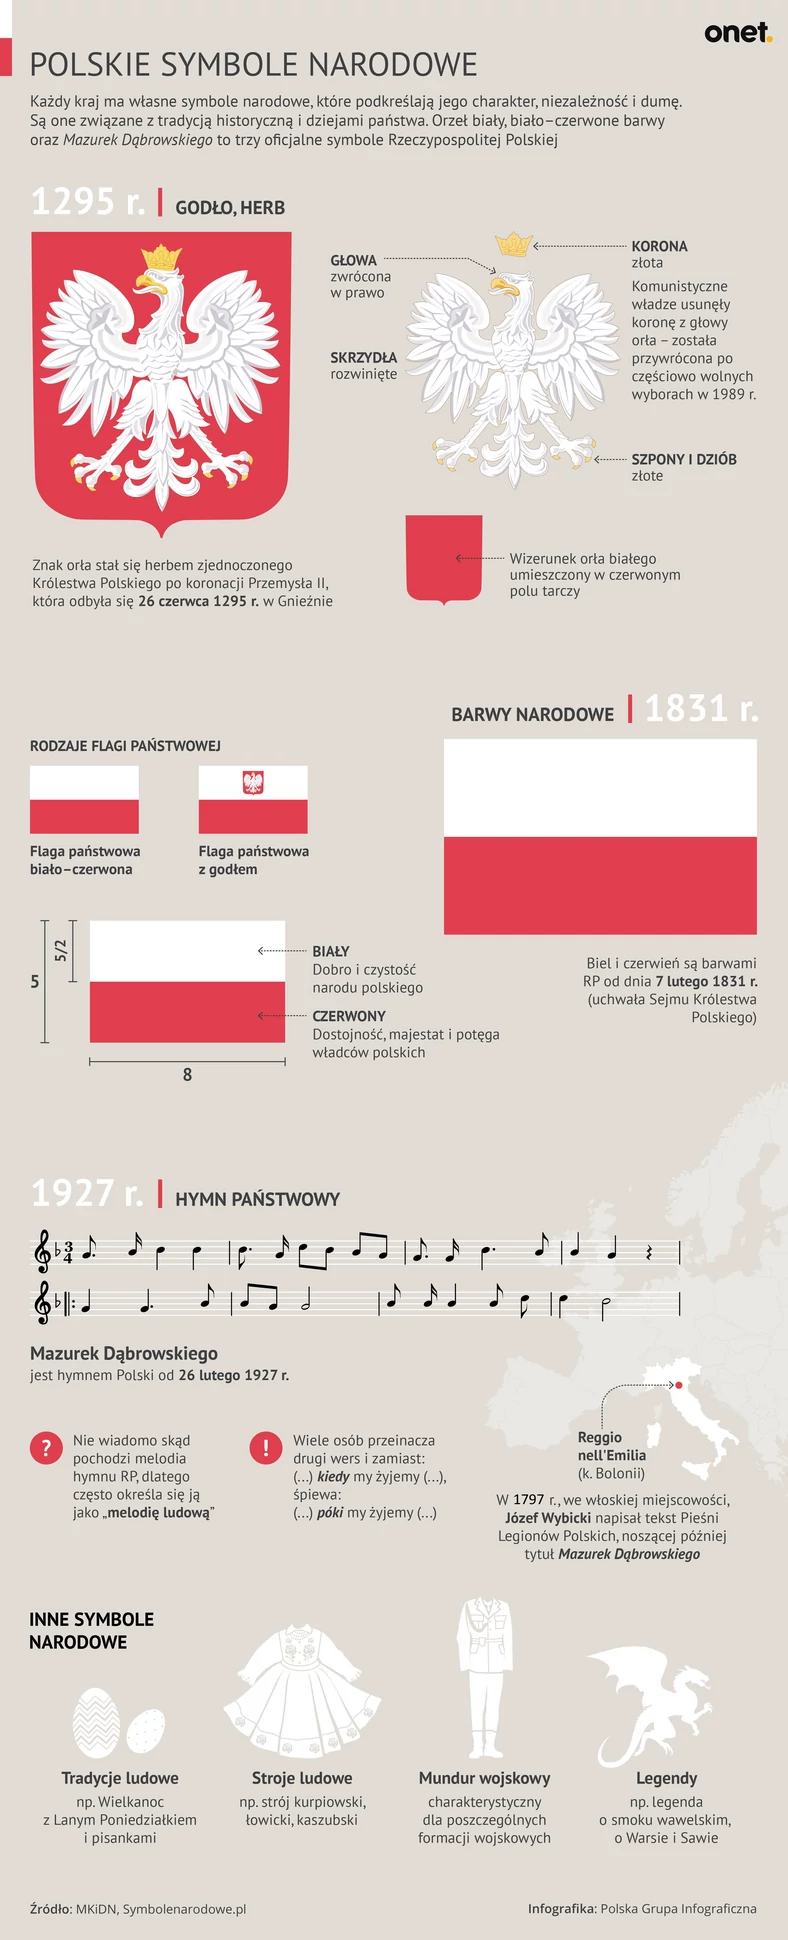 Polskie symbole narodowe - infografika